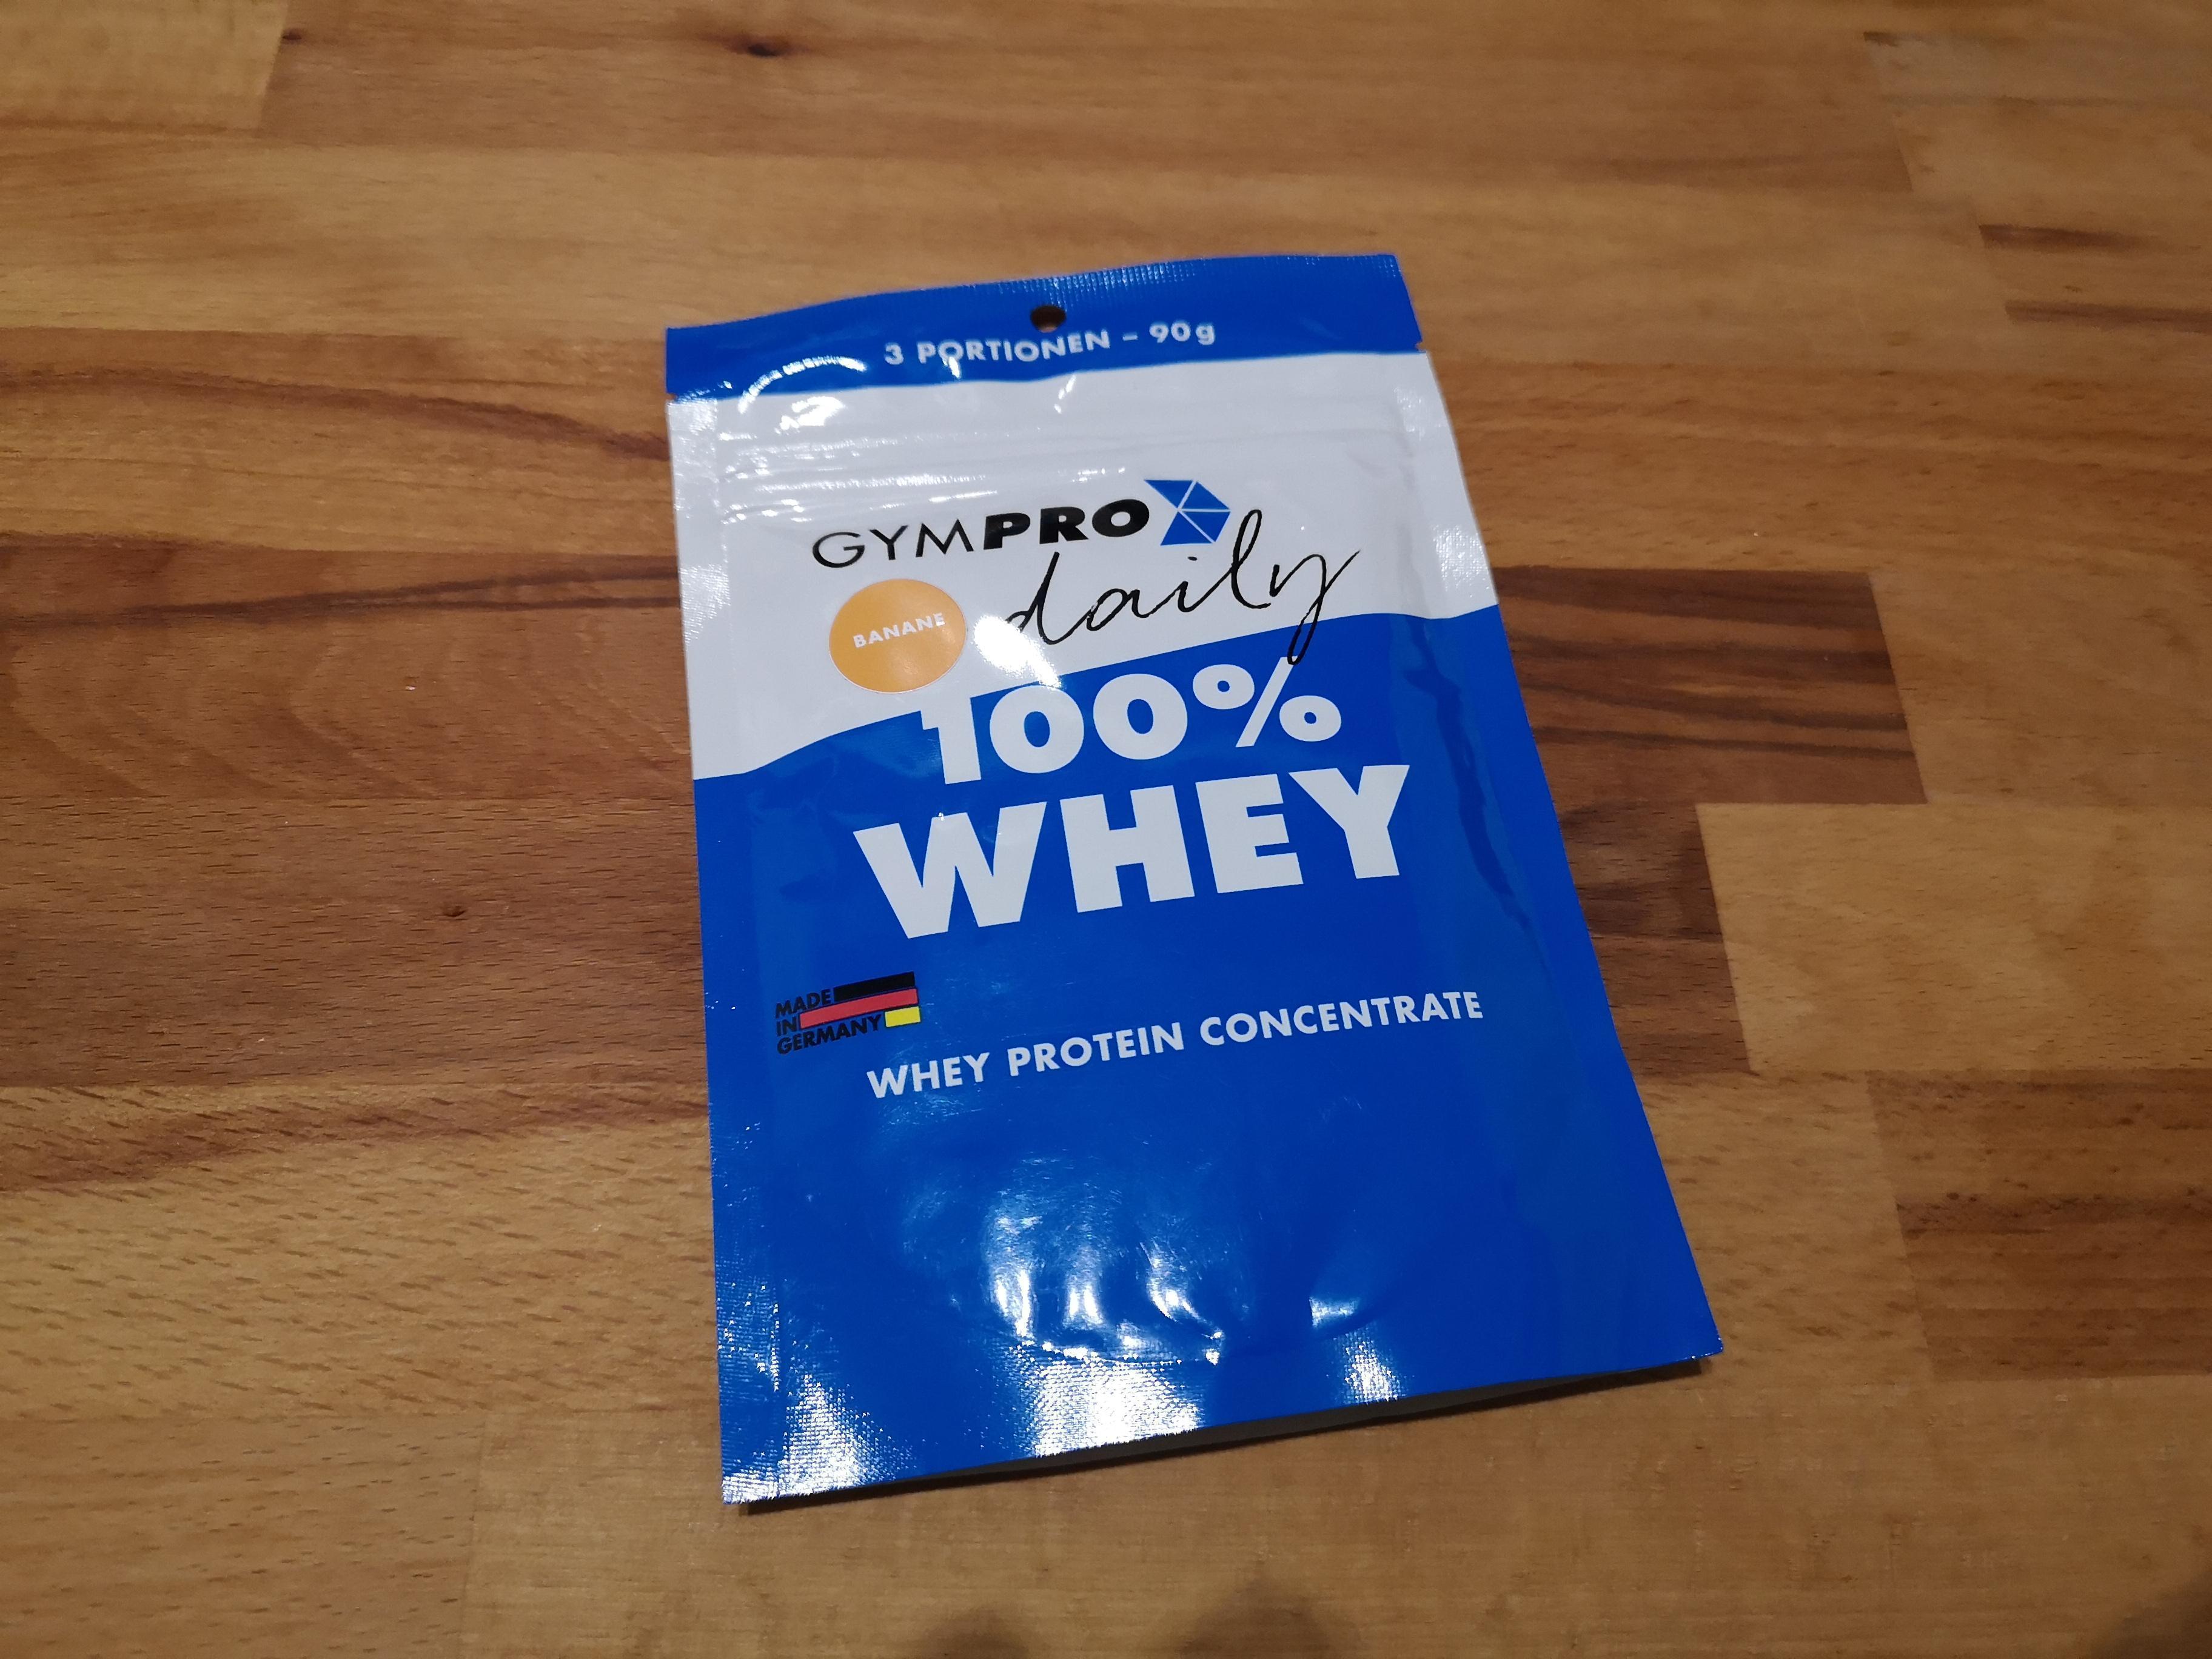 GymPro Premium Whey Protein Pulver - Produkt Test